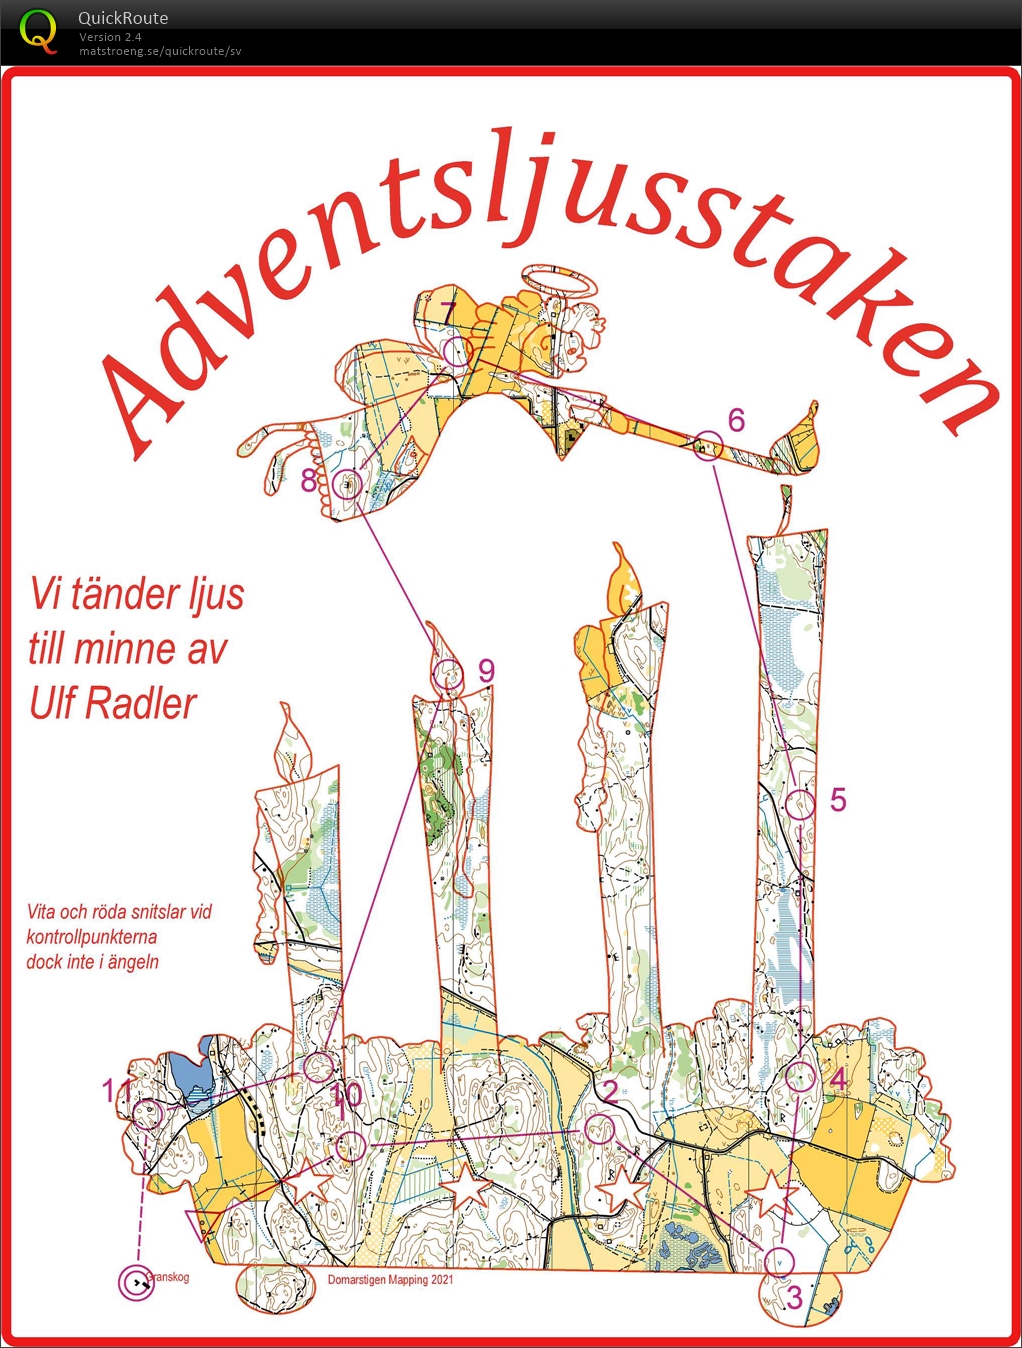 Adventsljusstaken - till minne av Ulf Radler (2021-12-19)